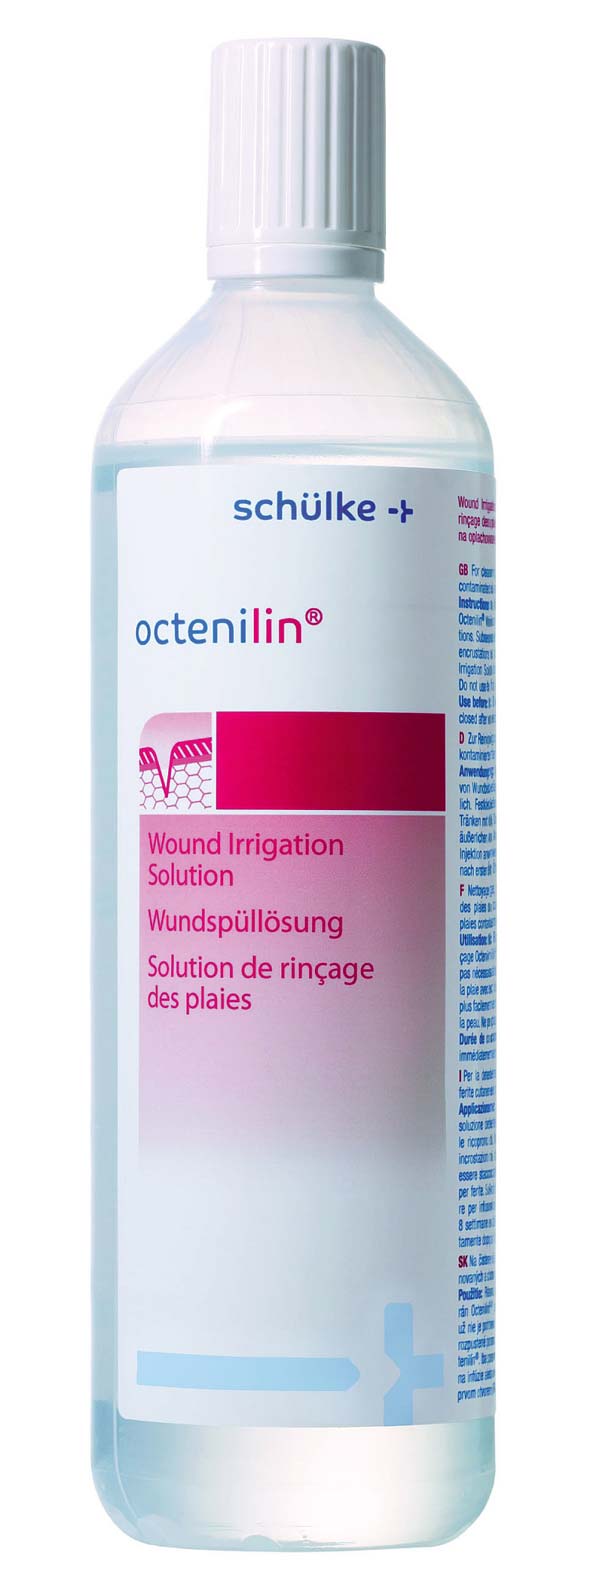 Octenilin Wundspüllösung, 350ml, 1 Stck.